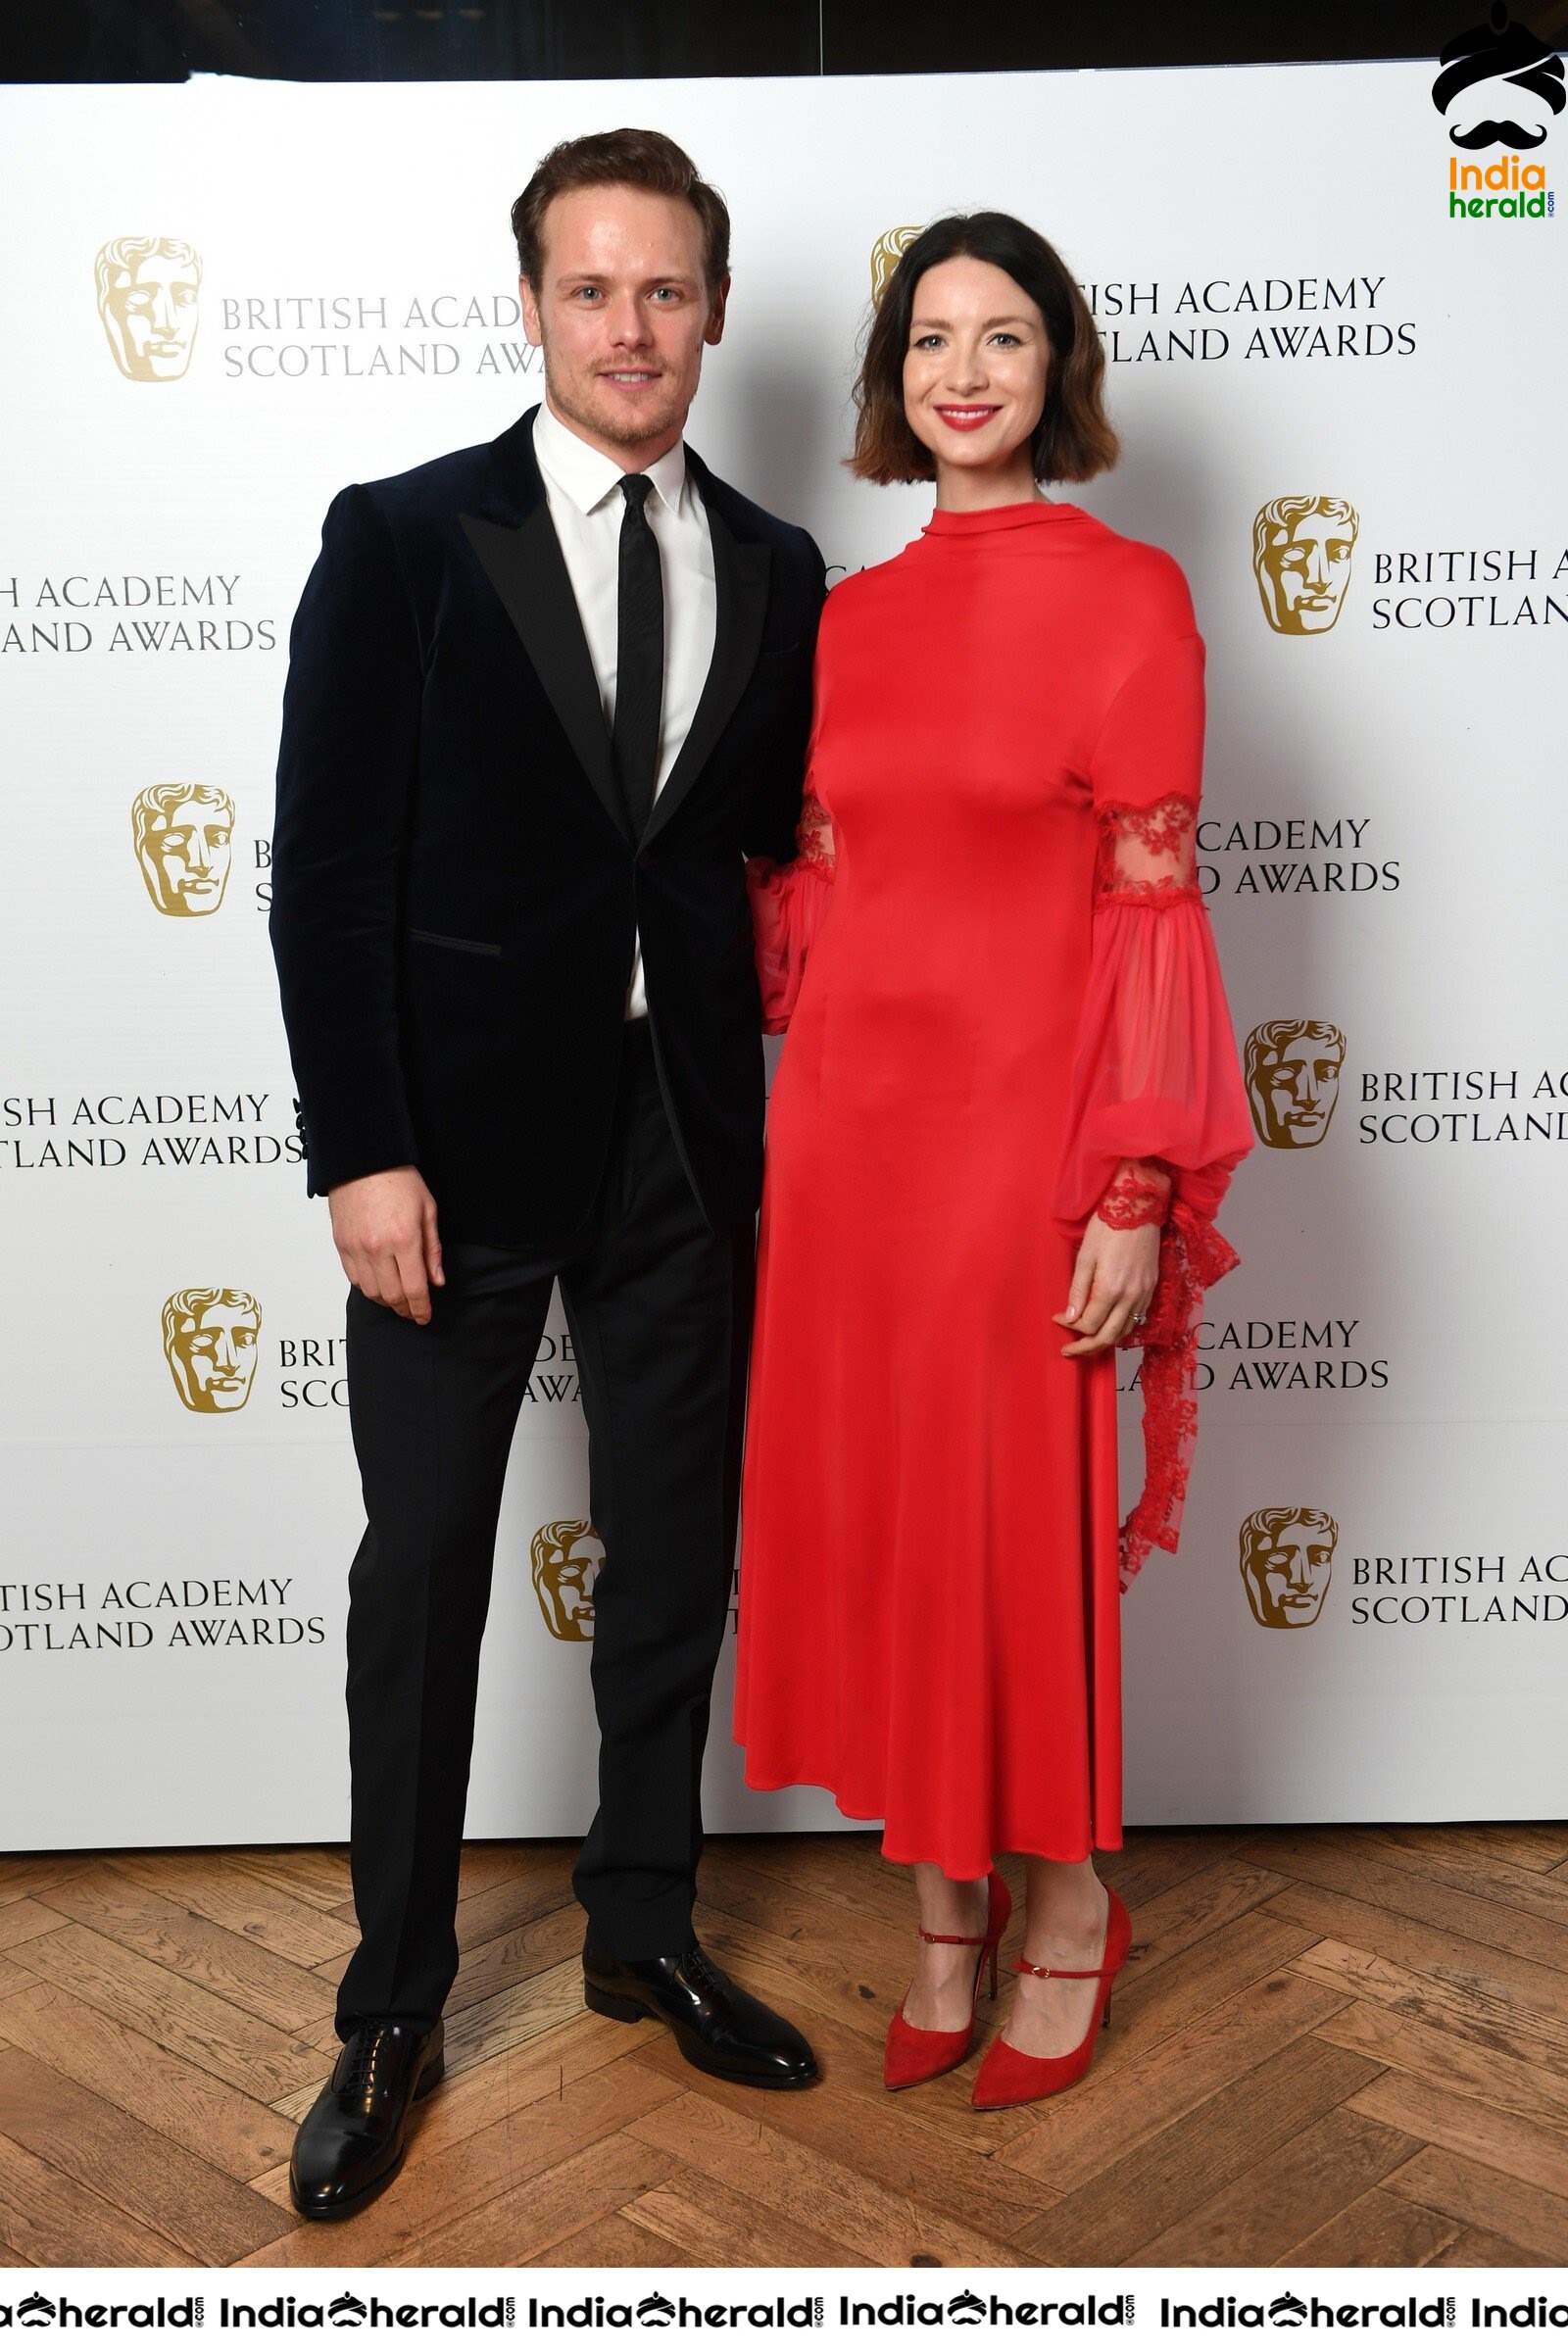 British Academy Scotland Awards 2019 in Glasgow Set 1